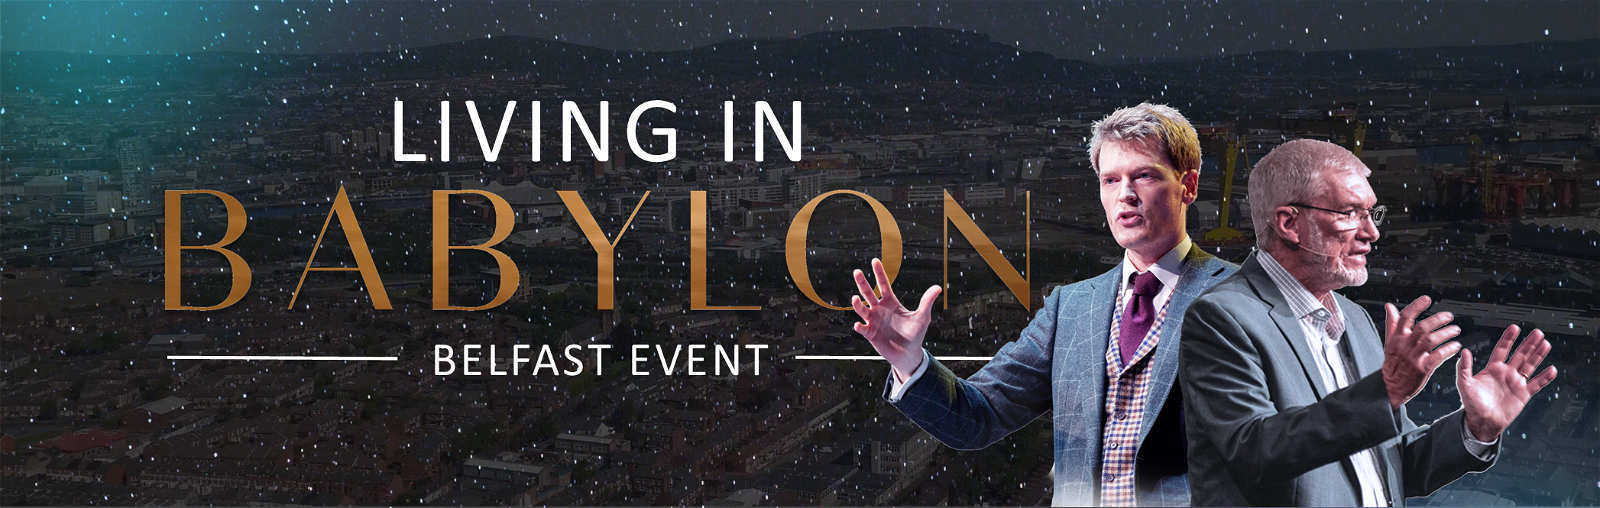 Living in Babylon Event